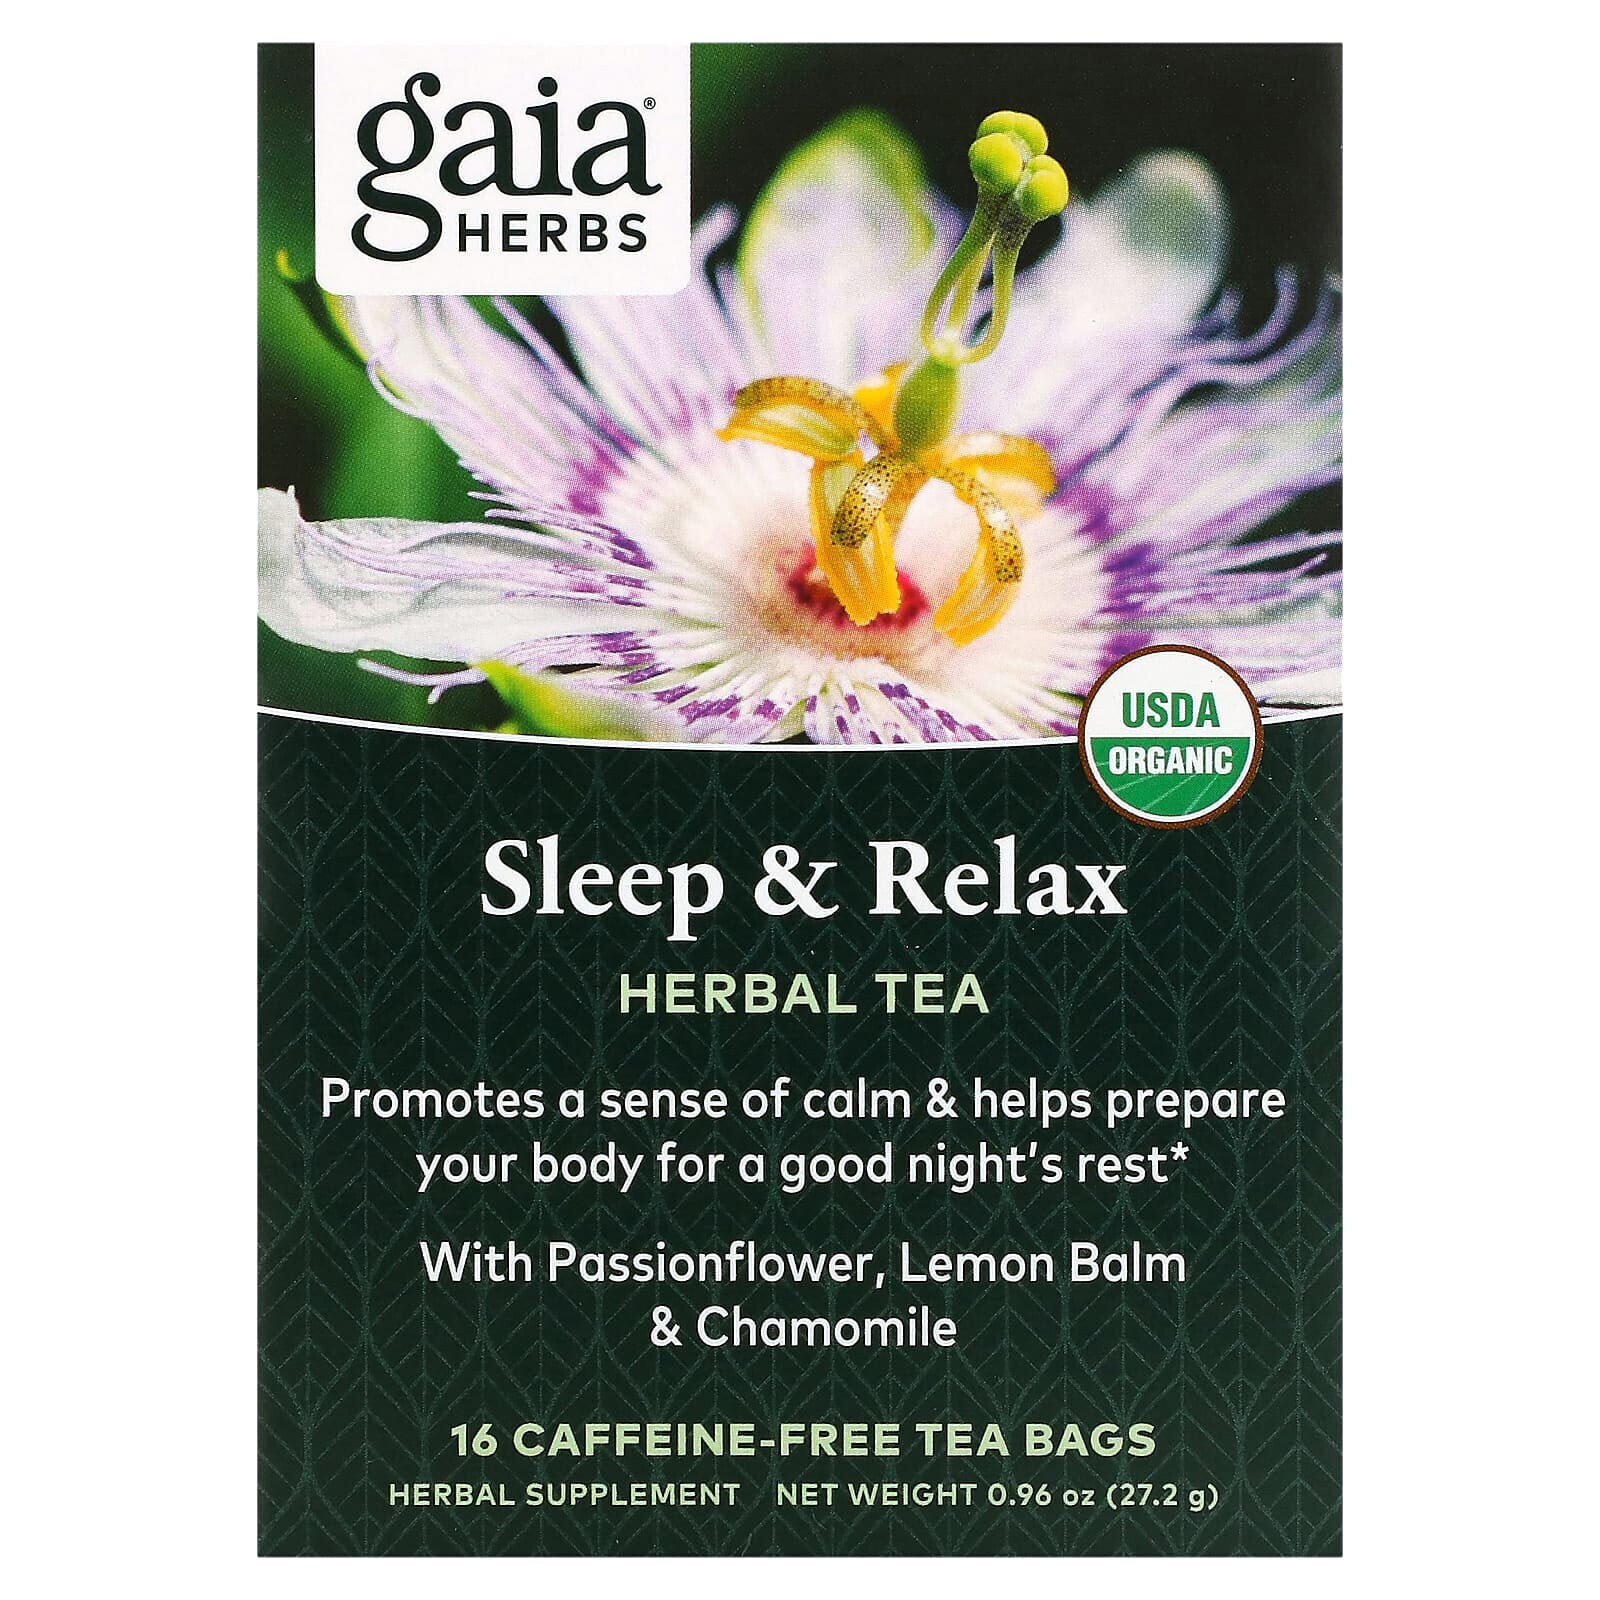 Гайа Хербс, травяной чай, для сна и расслабления, без кофеина, 16 чайных пакетиков, 27,2 г (0,96 унции)